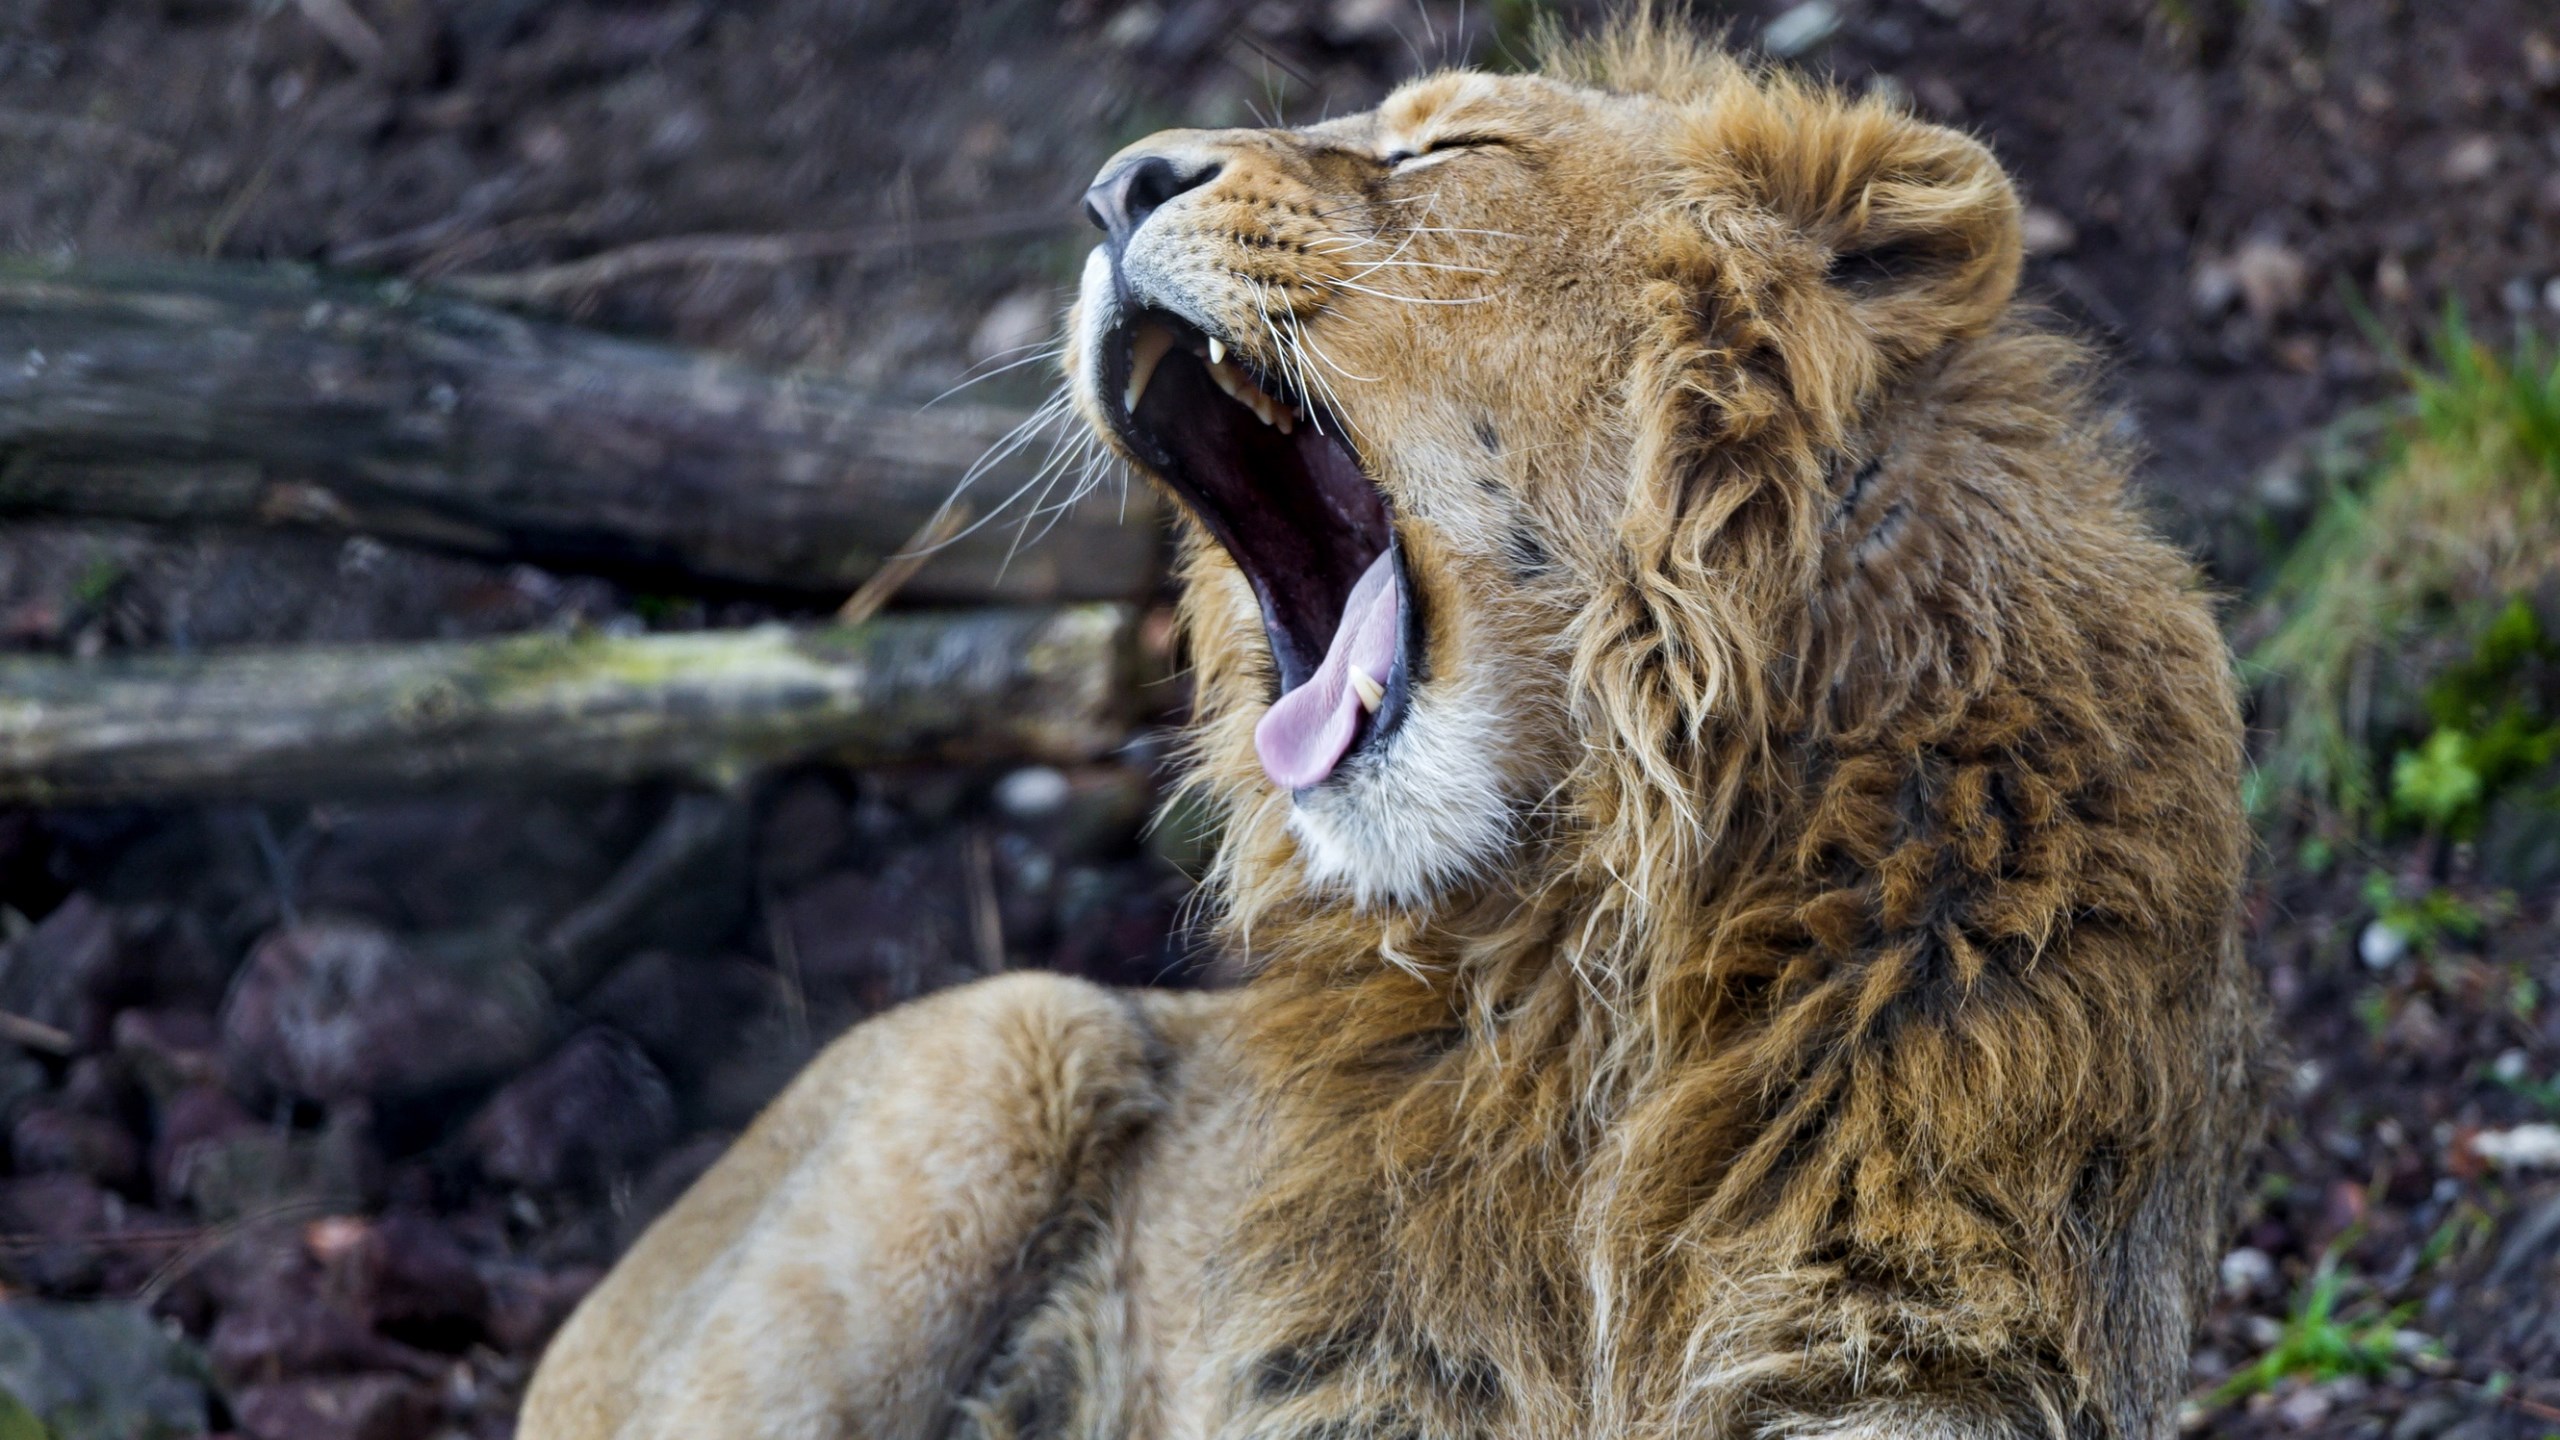 Loud Roaring Lion Image - Masai Lion , HD Wallpaper & Backgrounds